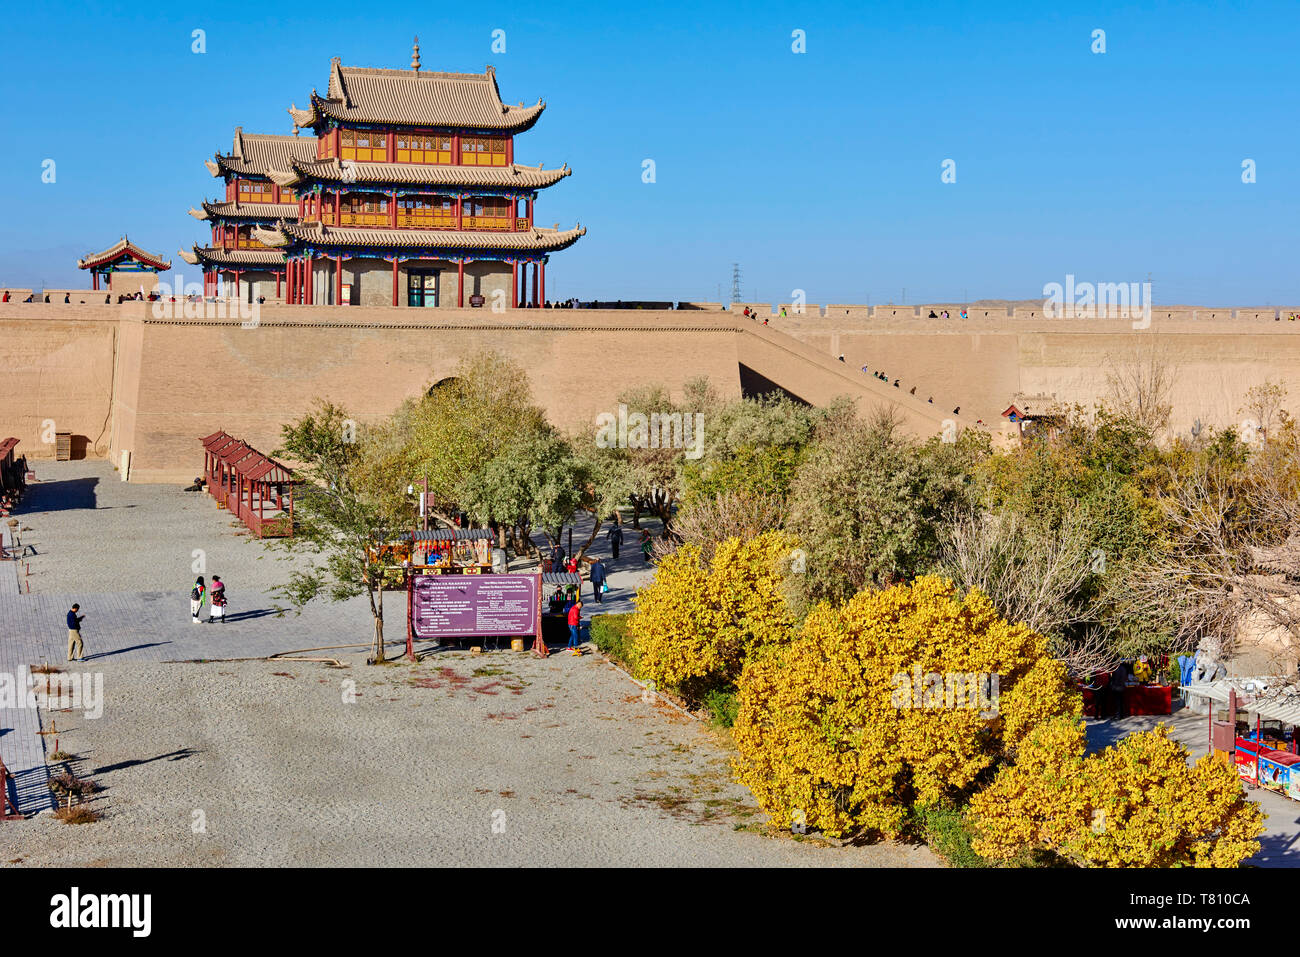 La rocca all'estremità occidentale della Grande Muraglia, Sito Patrimonio Mondiale dell'UNESCO, Jiayuguan, provincia di Gansu, Cina e Asia Foto Stock